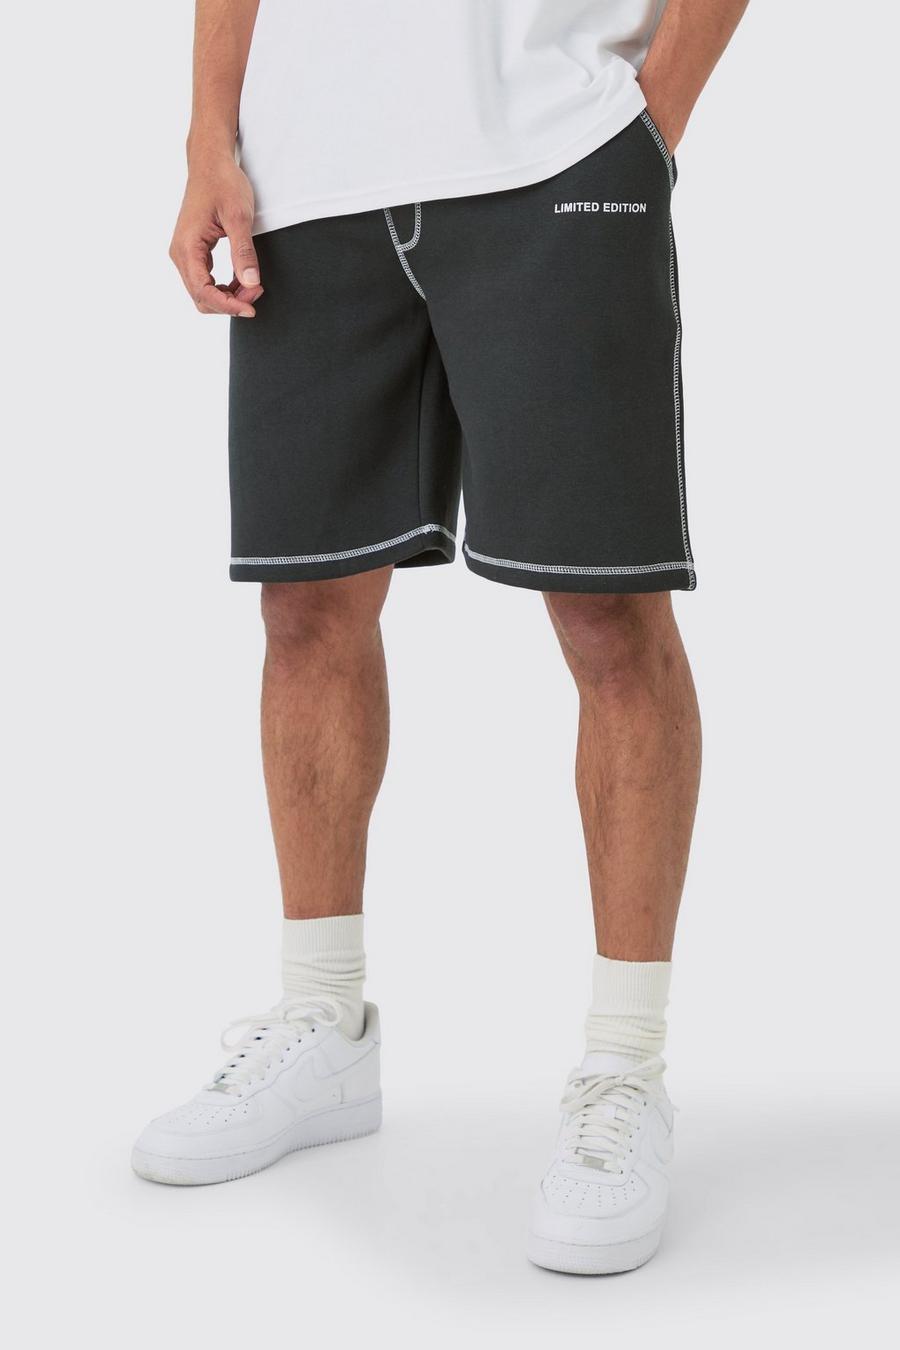 Pantalón corto holgado con costuras en contraste Limited Edition, Black